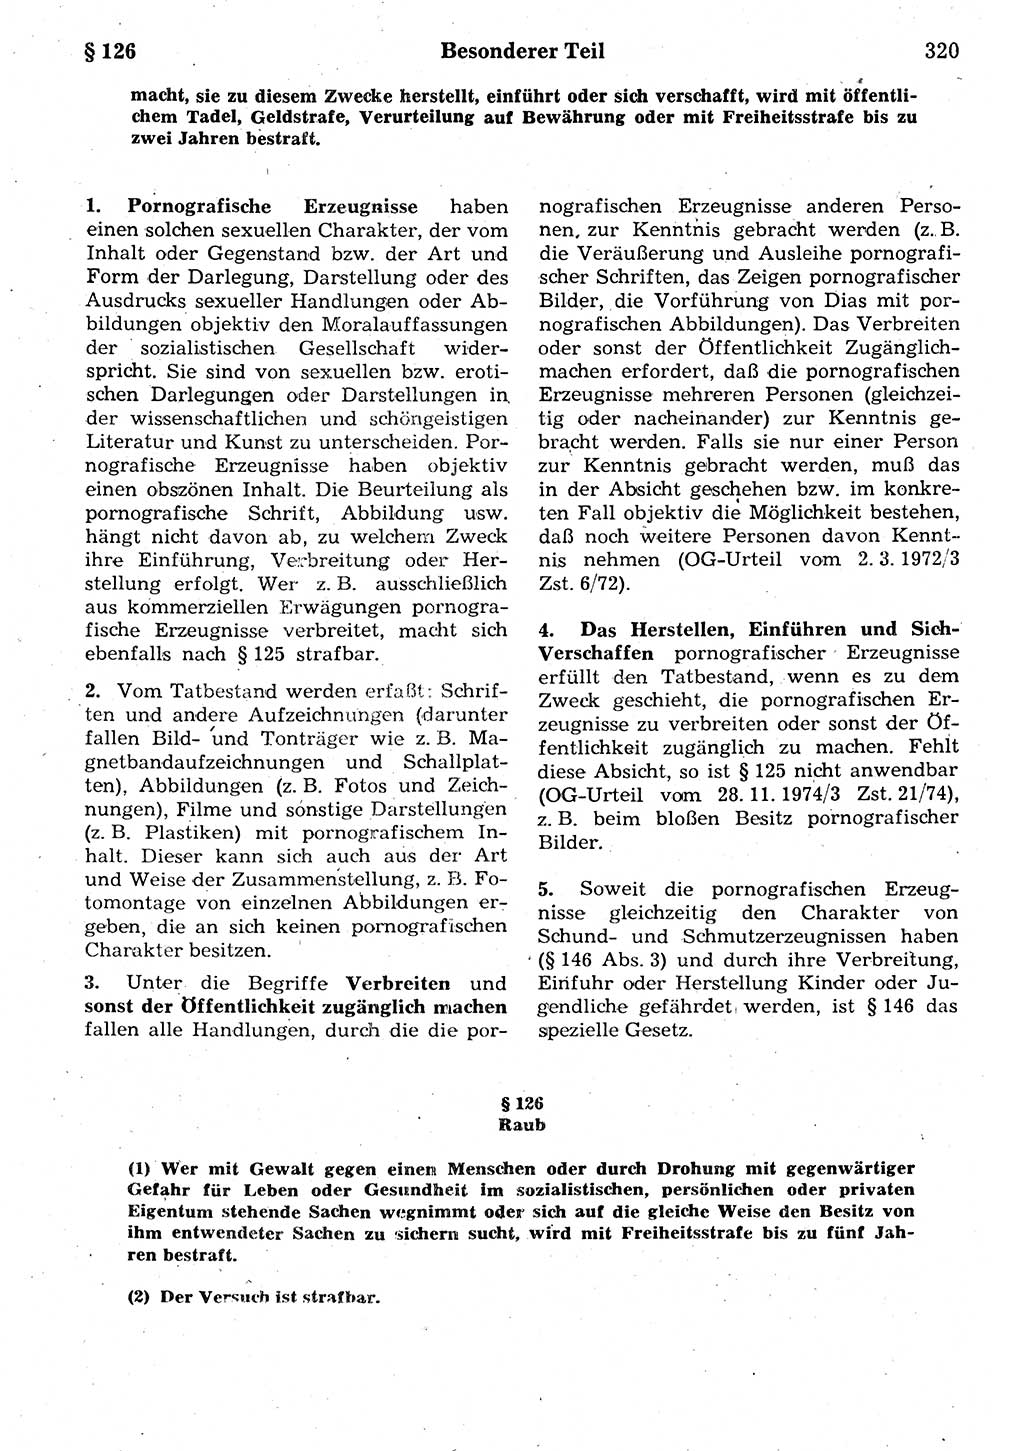 Strafrecht der Deutschen Demokratischen Republik (DDR), Kommentar zum Strafgesetzbuch (StGB) 1987, Seite 320 (Strafr. DDR Komm. StGB 1987, S. 320)